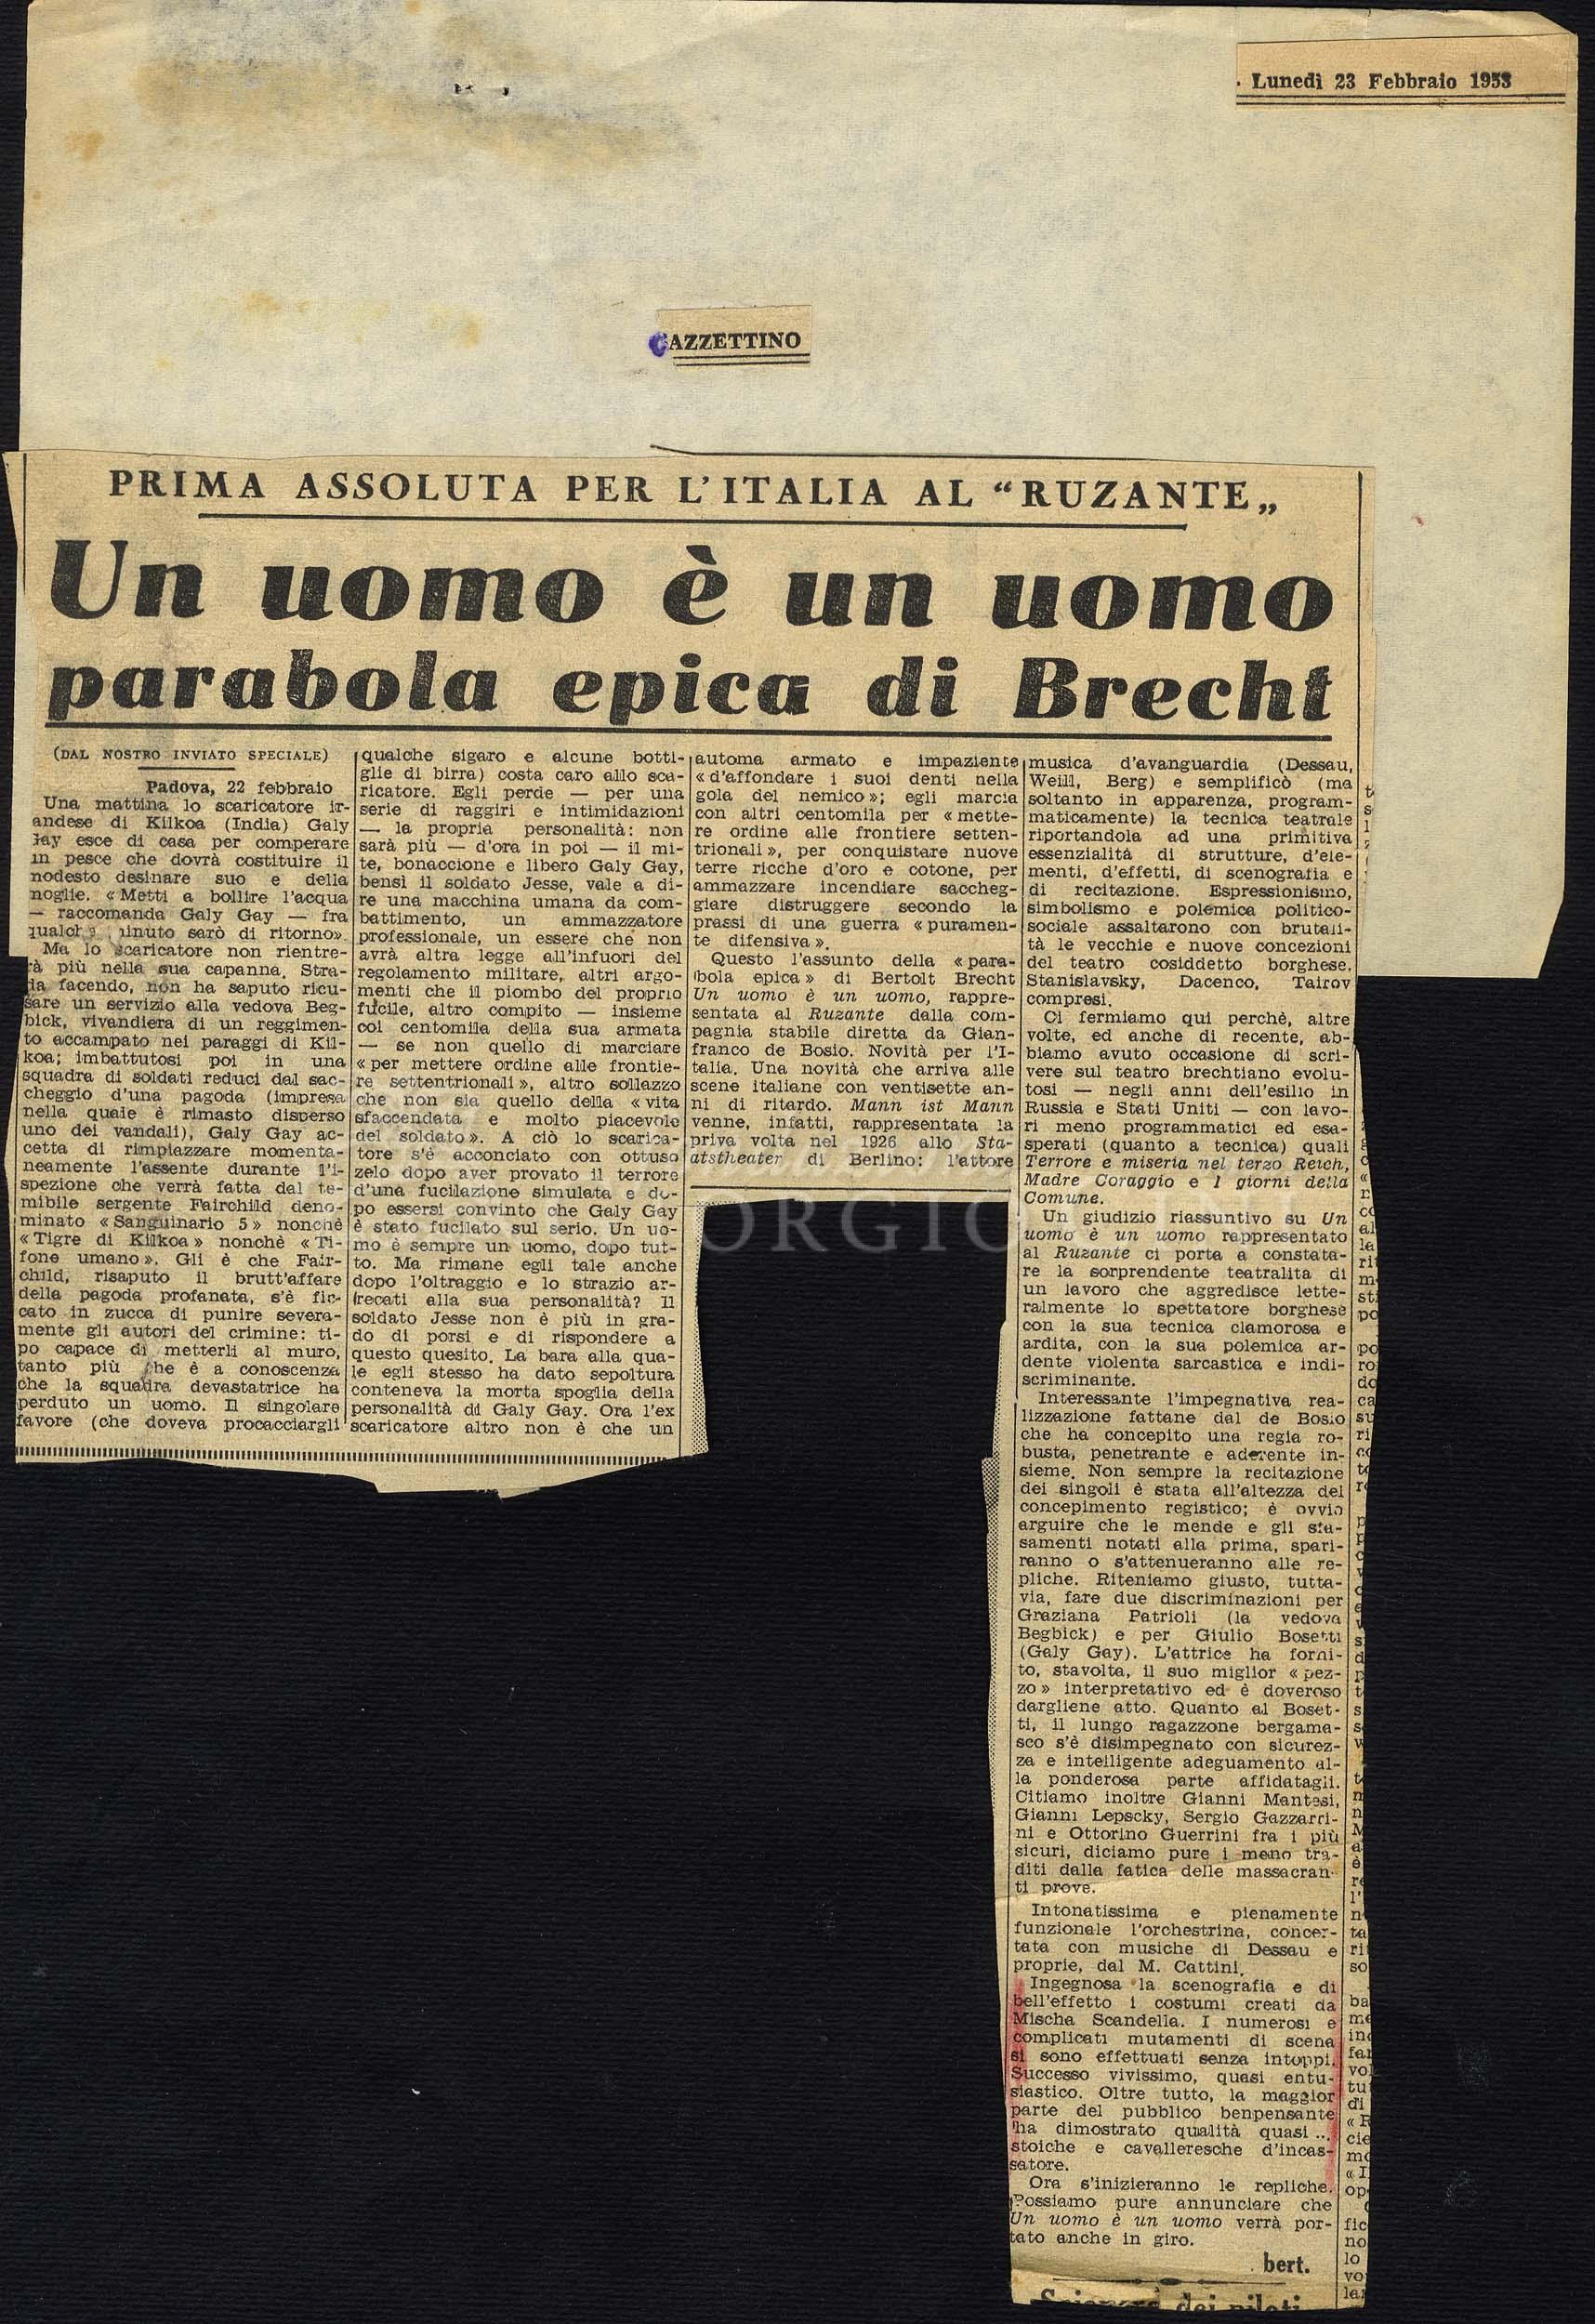 Un uomo è un uomo parabola epica di Brecht
				 : Prima assoluta per l'Italia al 